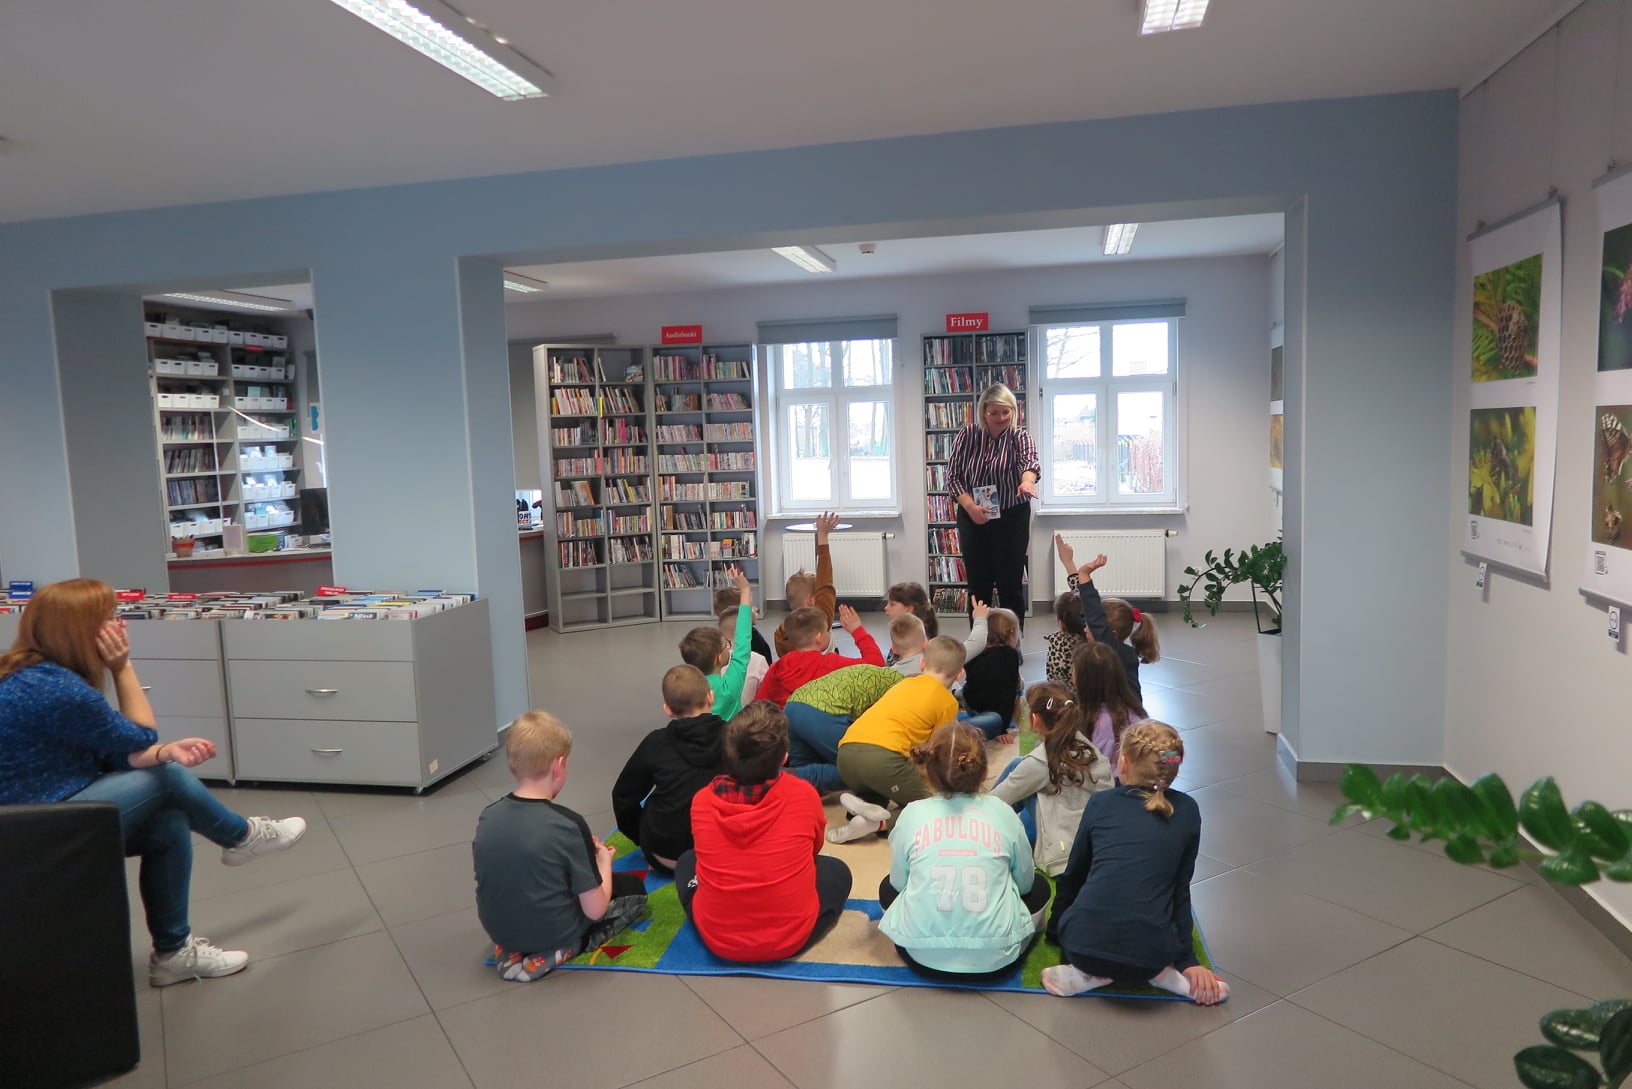 Mediateka, na środku sali rozłożony duży prostokątny dywan na którym siedzi 19 dzieci odwróconych plecami do fotografa. Przed dziećmi stoi bibliotekarka i prowadzi z nimi rozmowę pokazując coś dłonią.